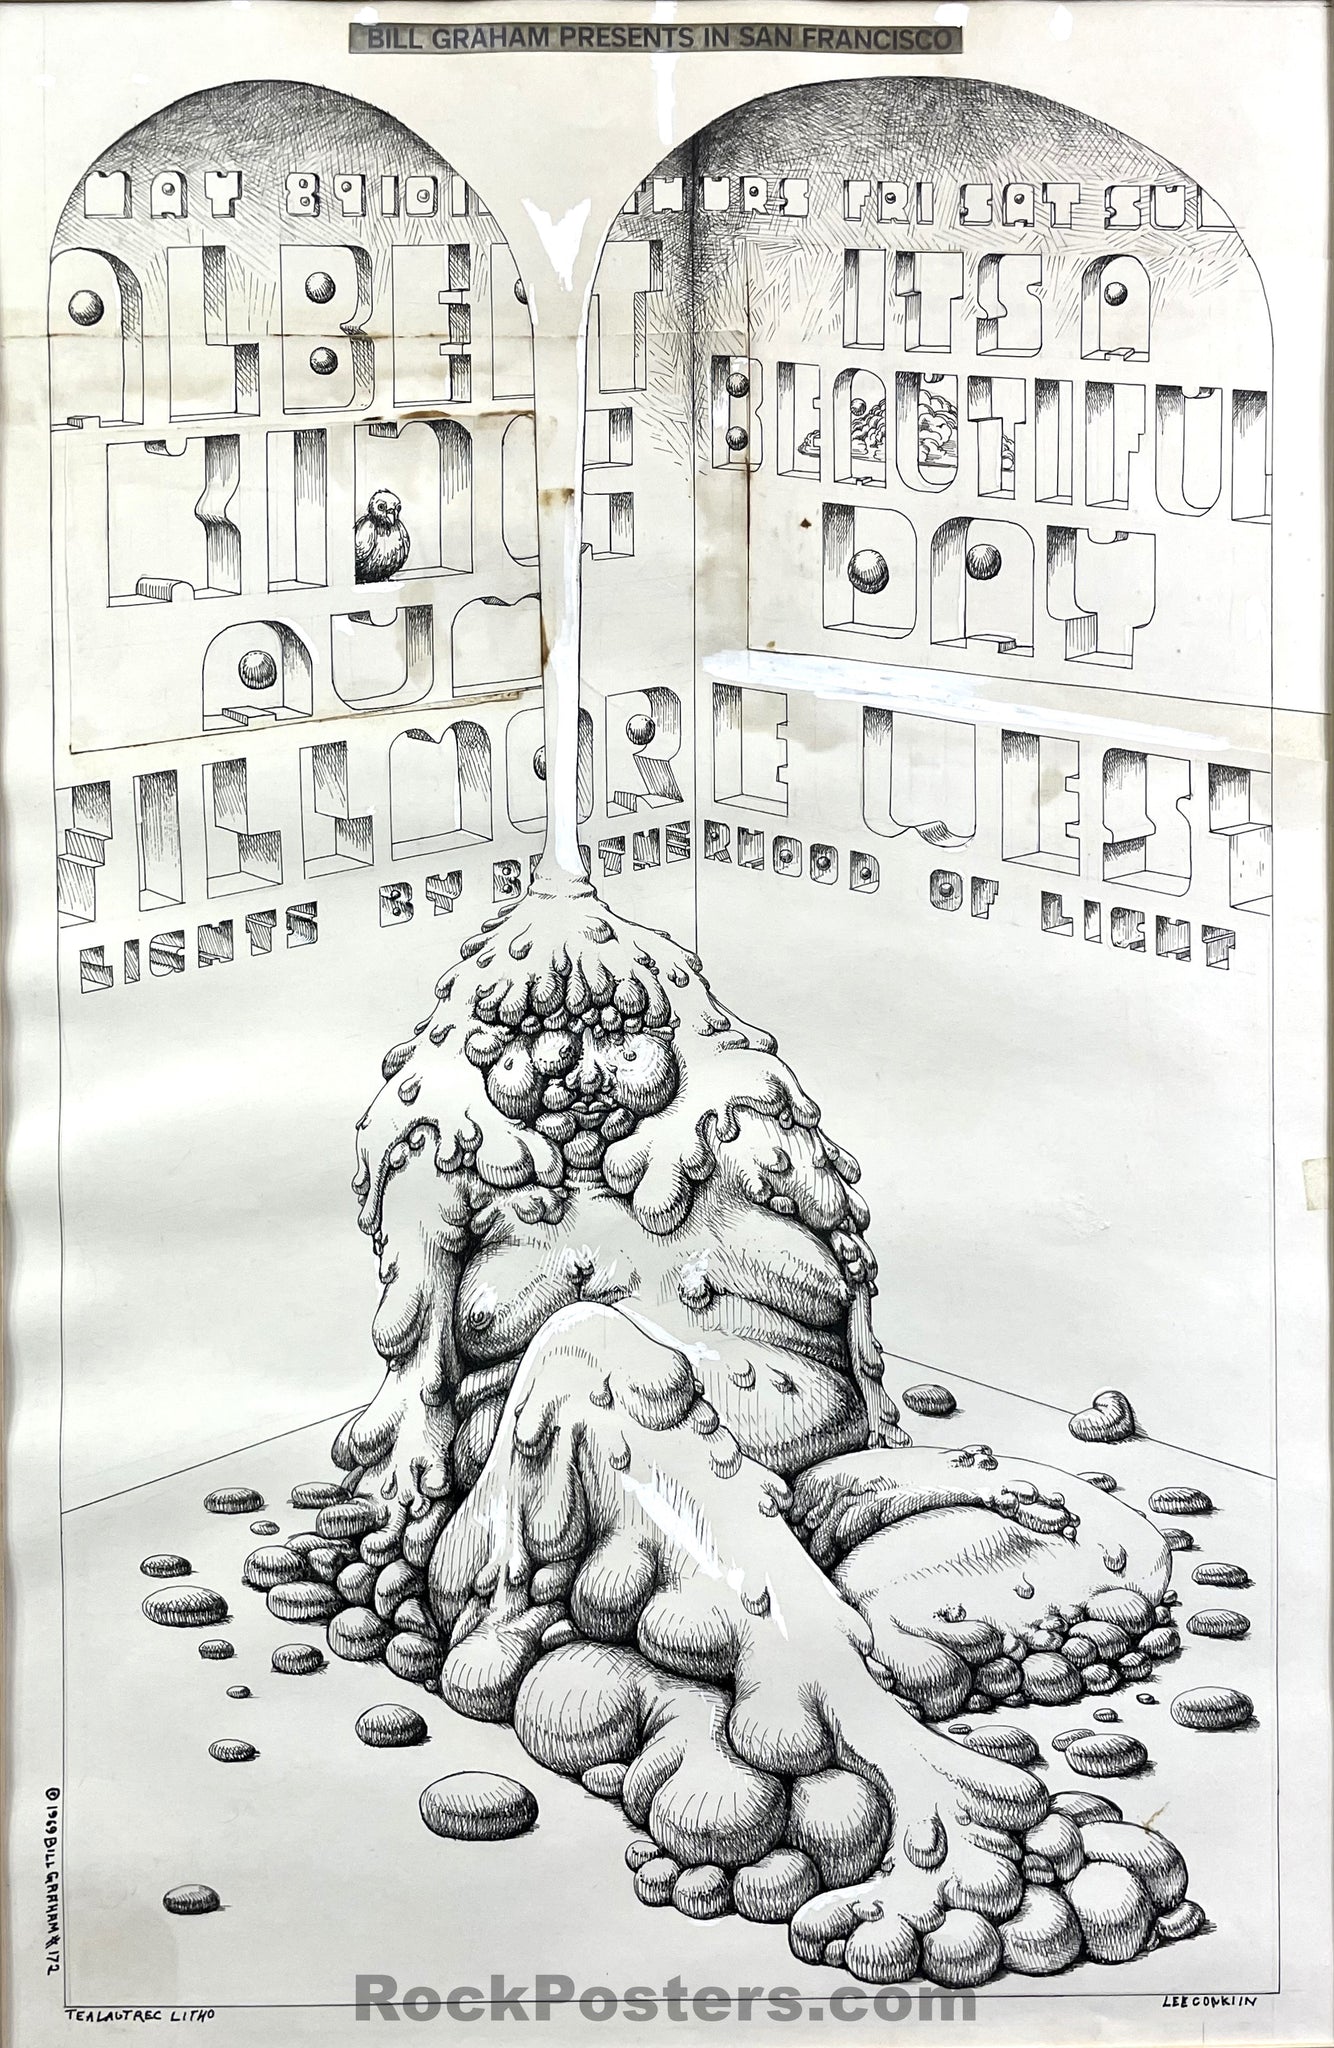 BG-172 - ORIGINAL POSTER ART - Lee Conklin - 1969 Ink on Paper - Fillmore West - Excellent